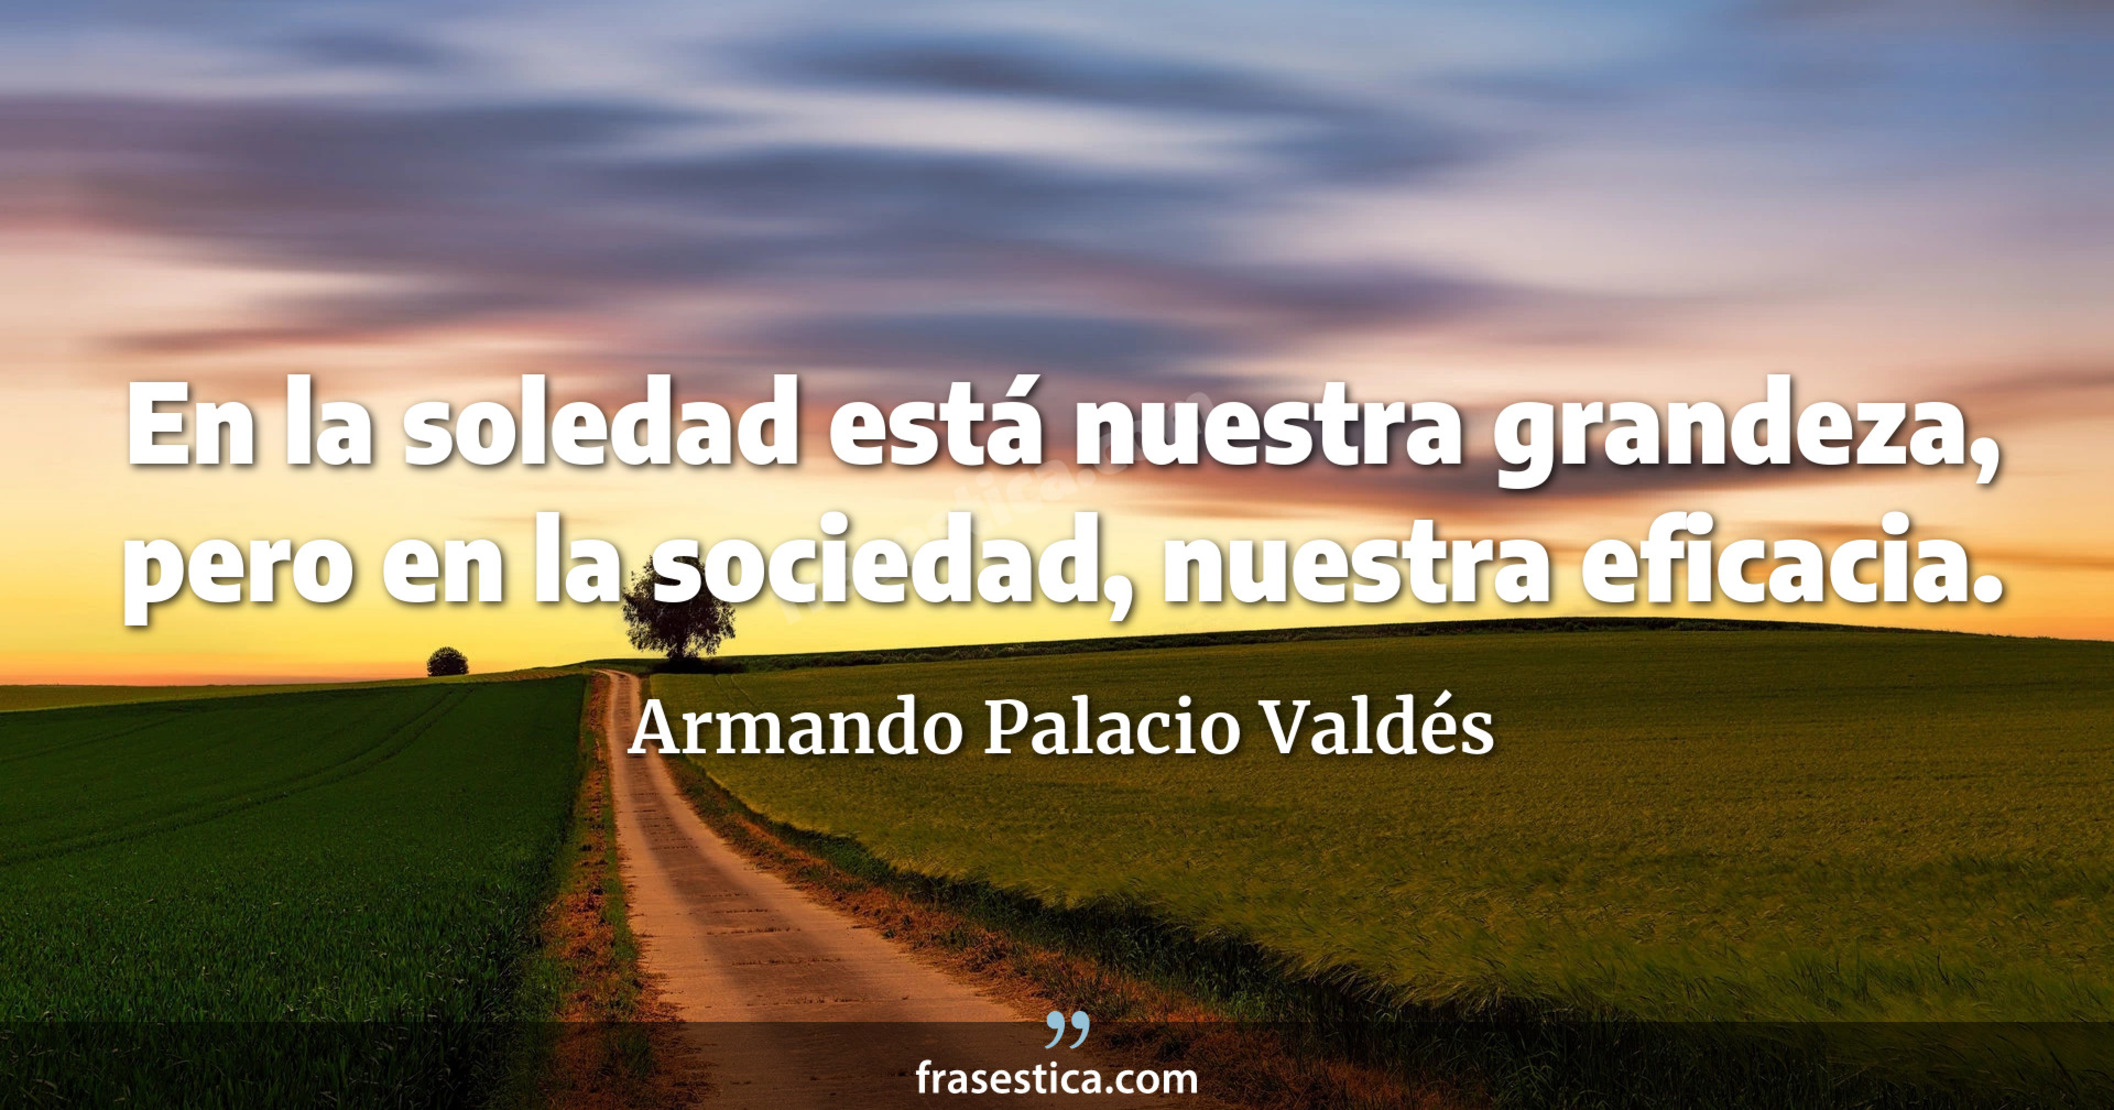 En la soledad está nuestra grandeza, pero en la sociedad, nuestra eficacia. - Armando Palacio Valdés